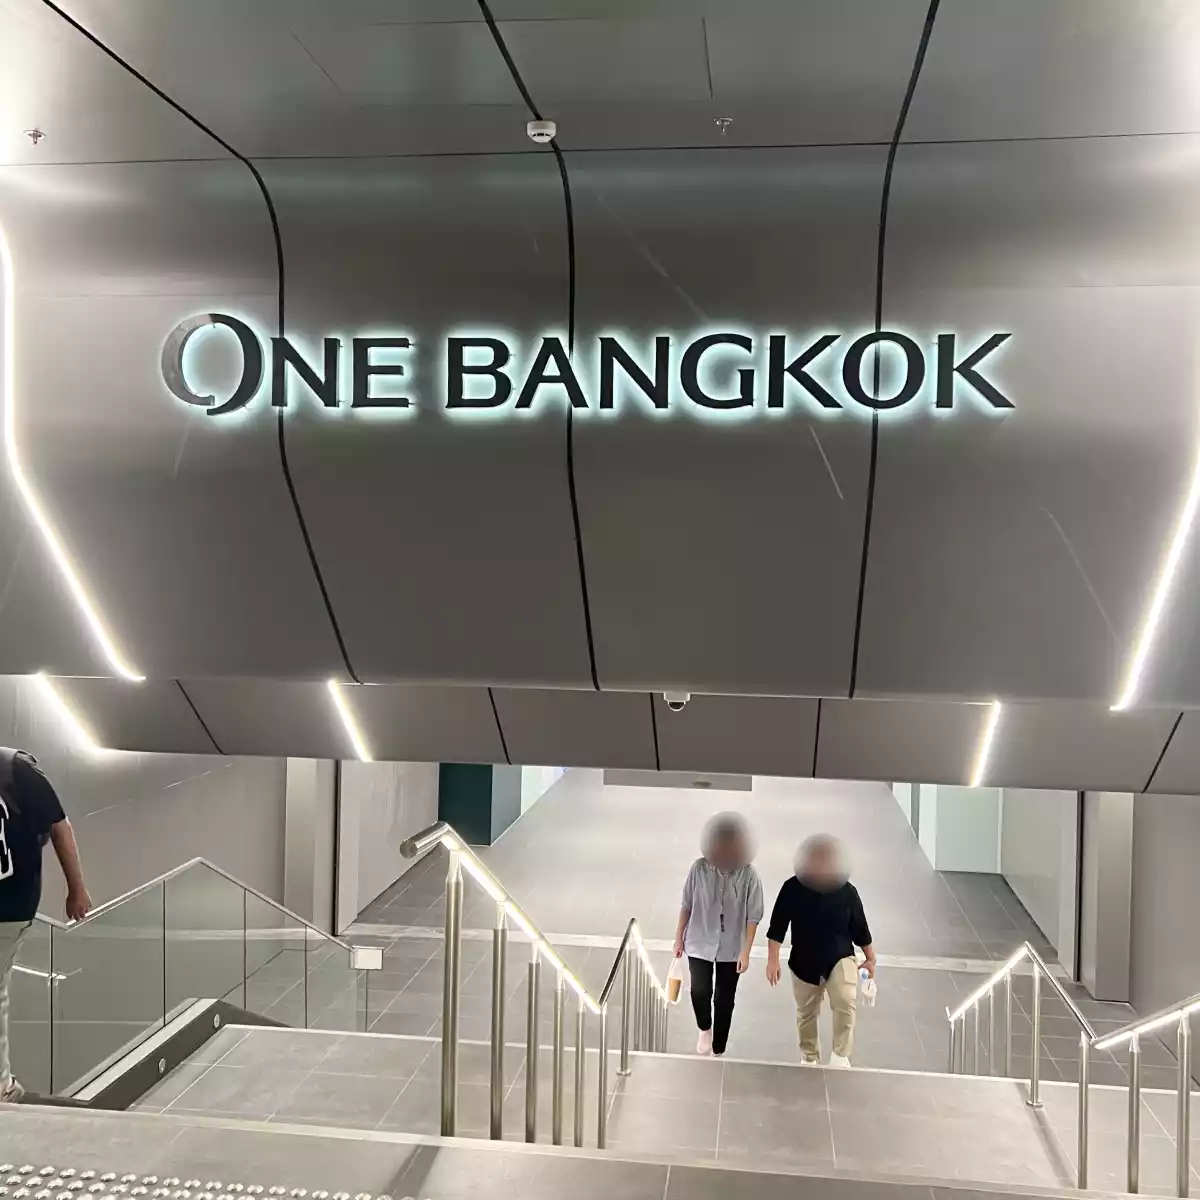 ทางเดินไป One Bangkok